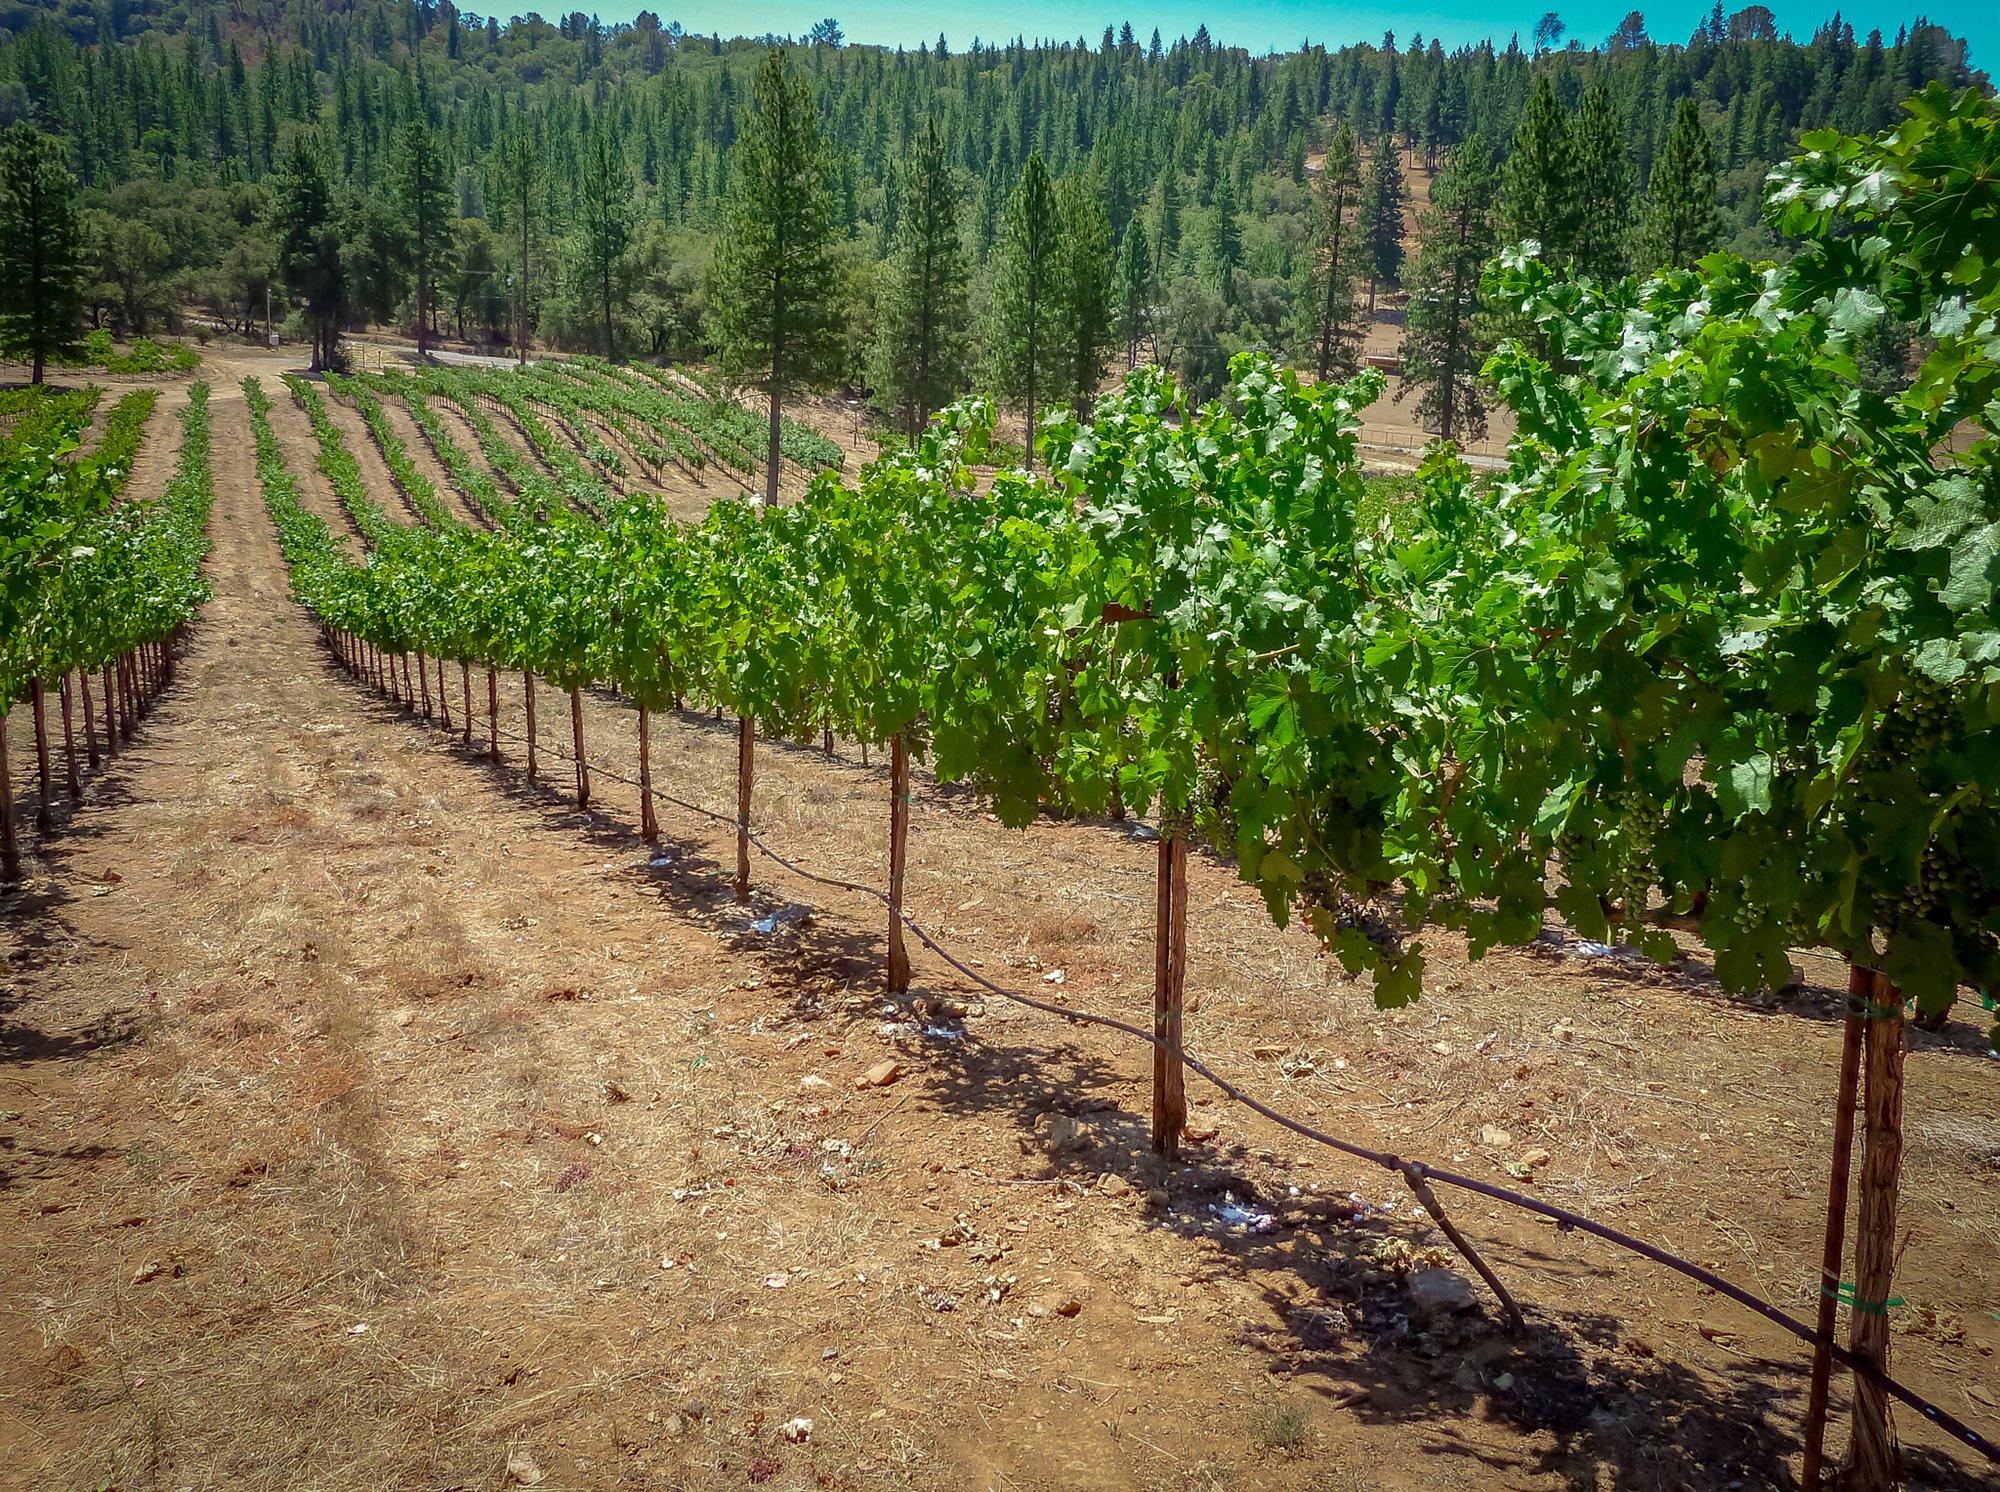 Sierra Foothills vineyards and wineries